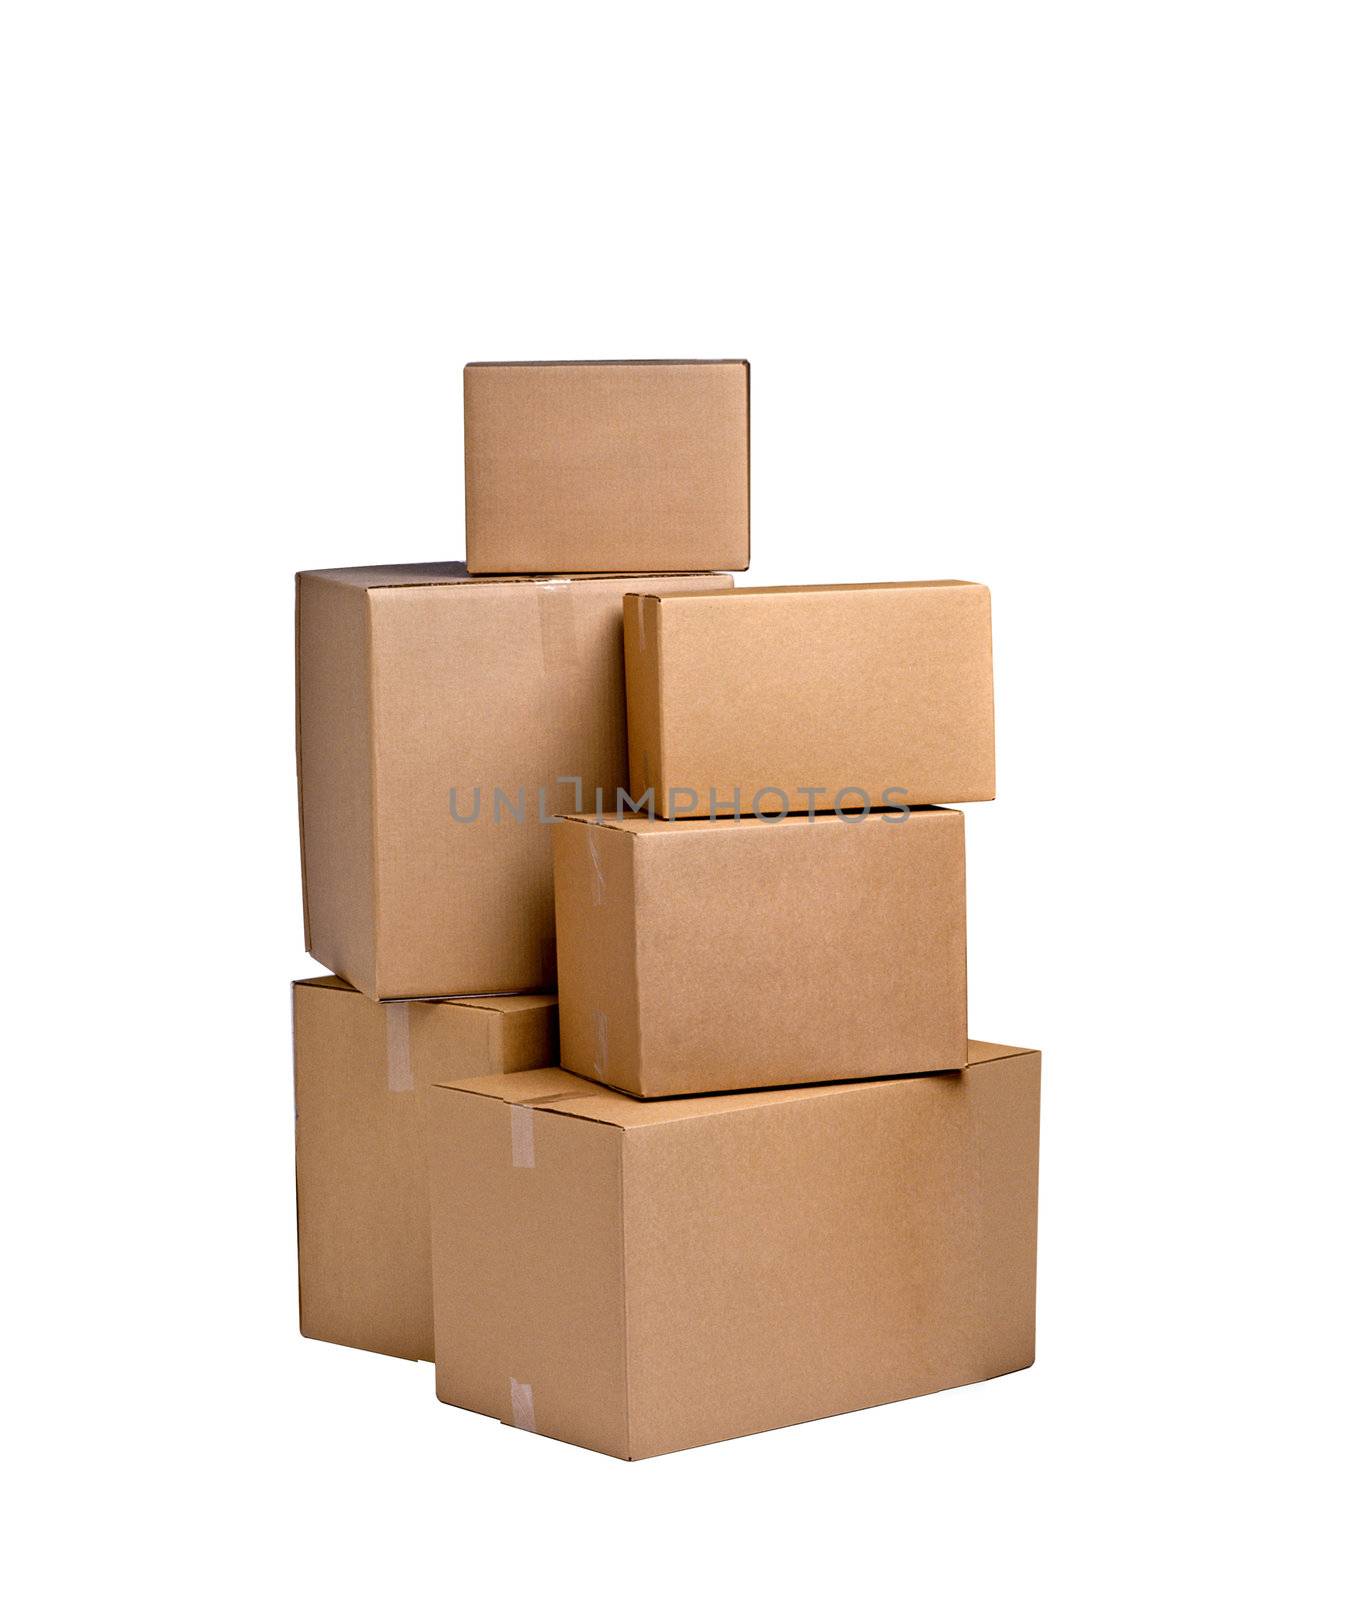 boxes by ozaiachin